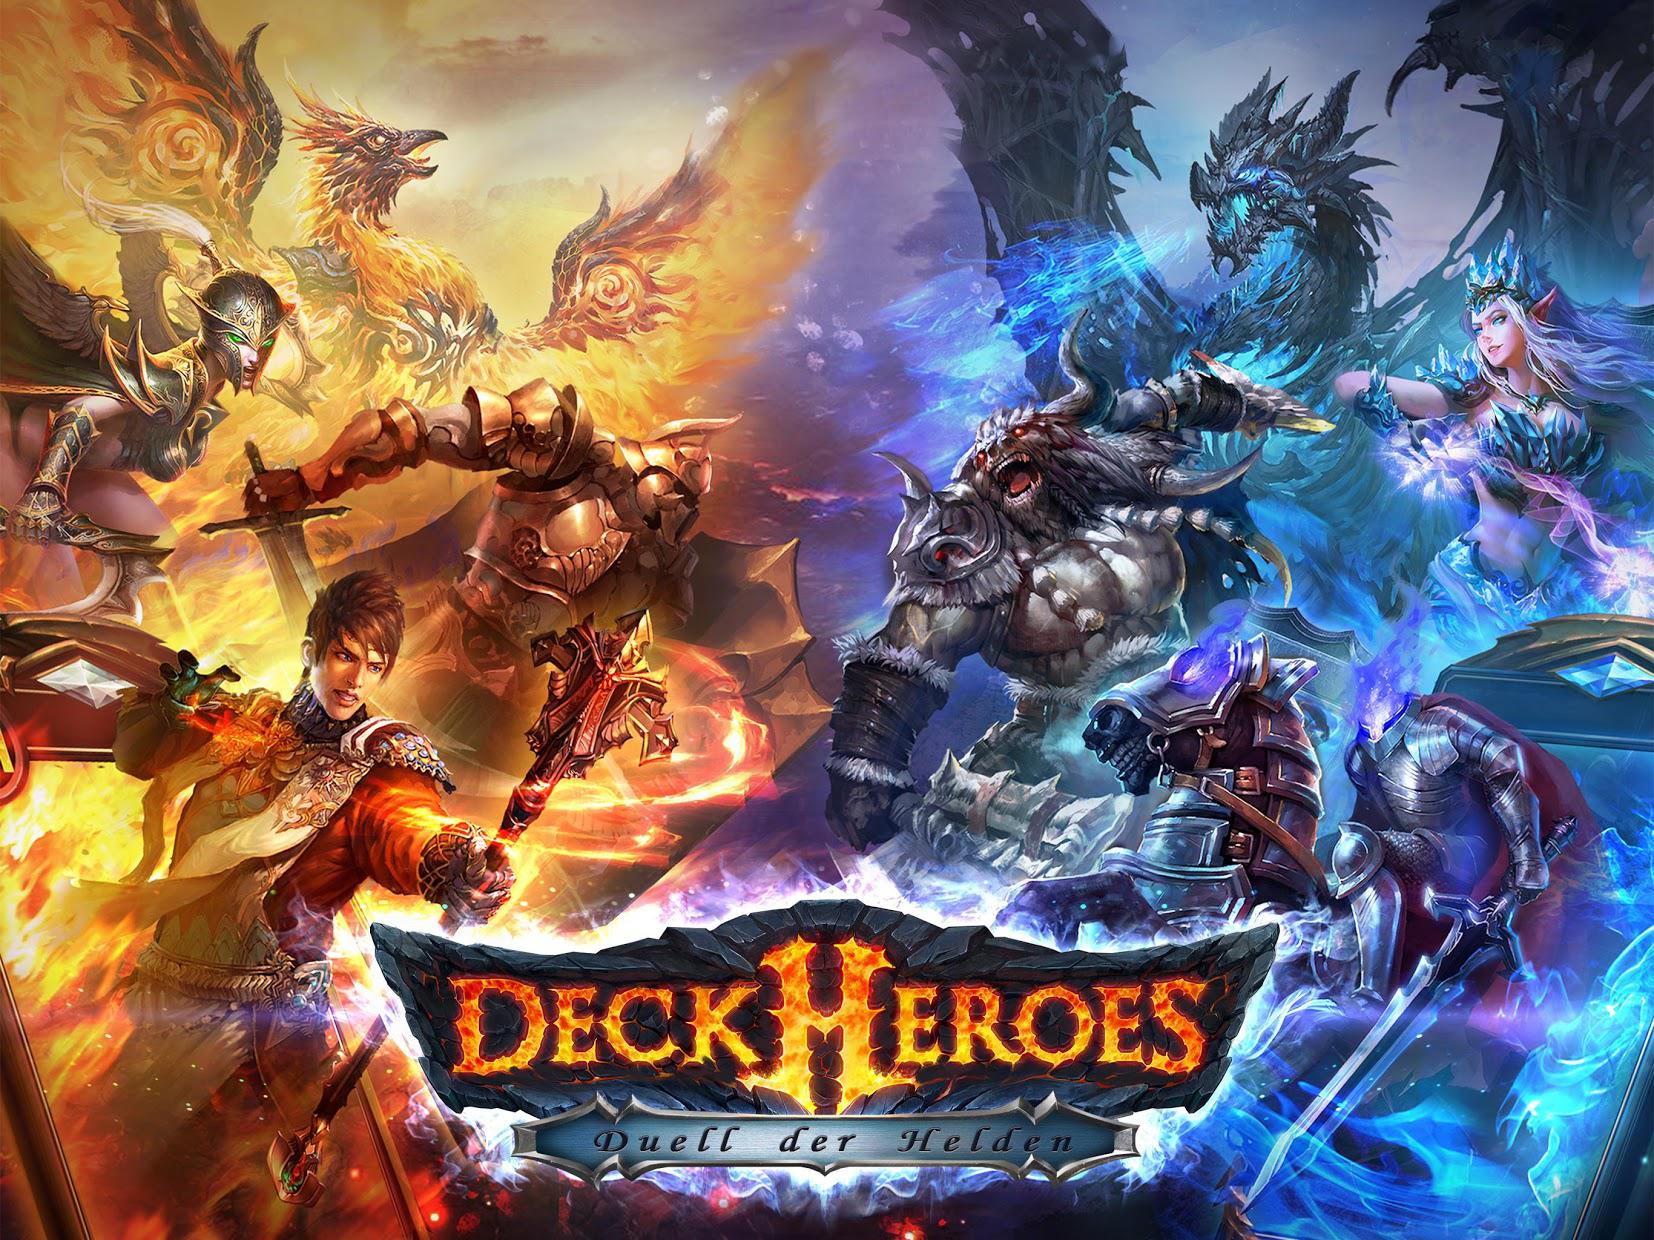 Deck Heroes: Duell der Helden